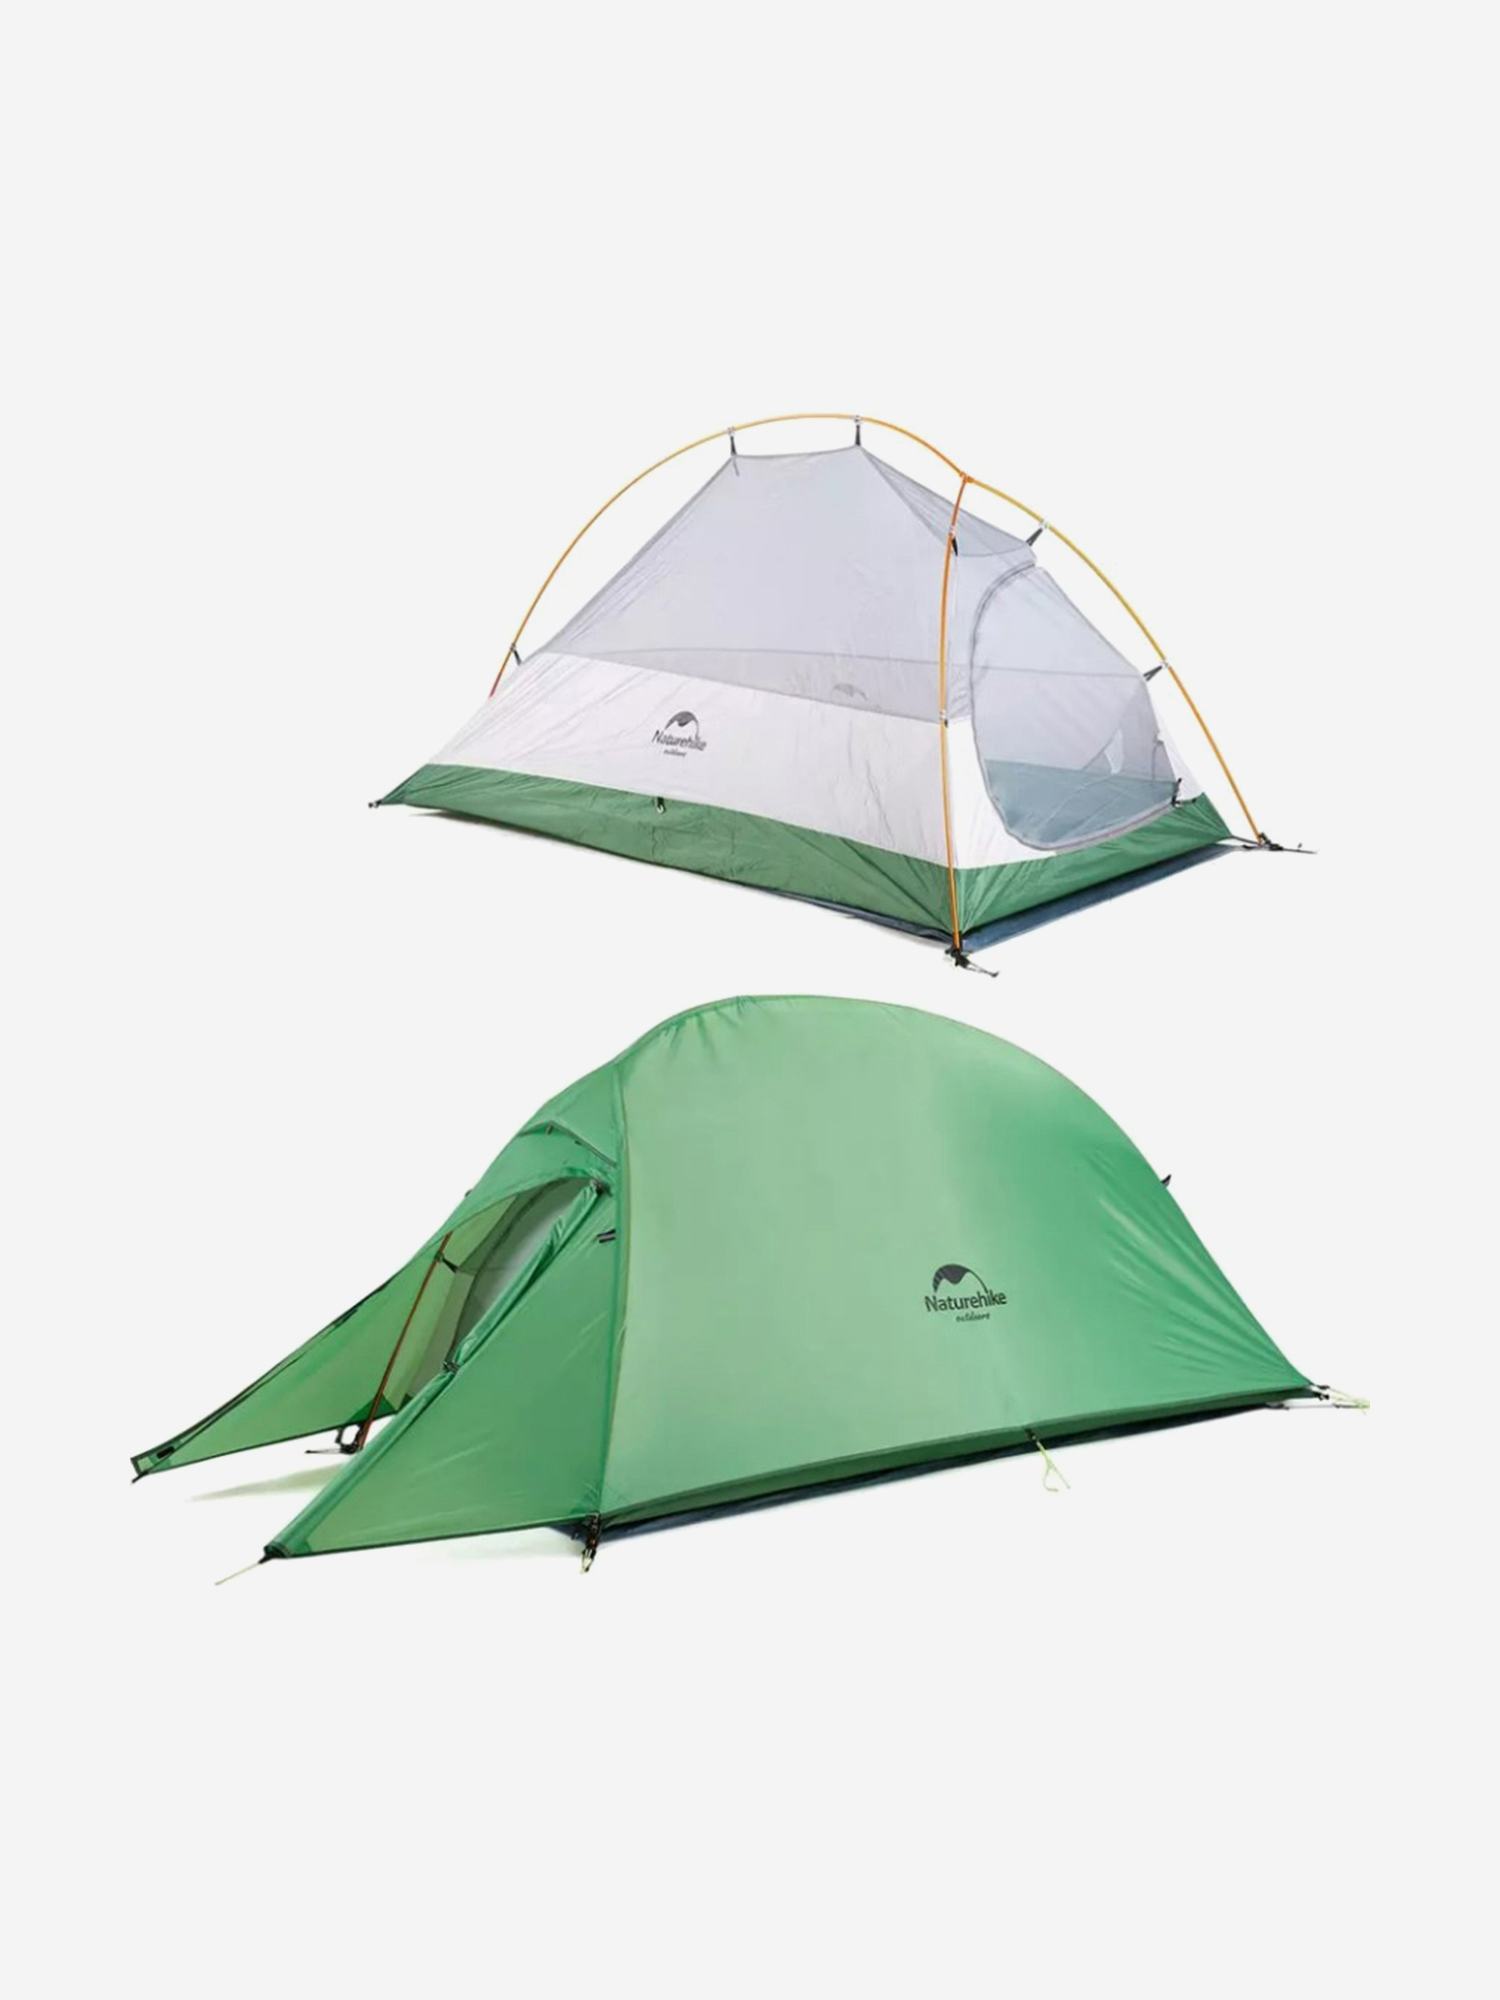 Палатка Naturehike Cloud Up 1-местная, алюминиевый каркас, сверхлегкая, зеленый, Зеленый палатка naturehike opalus si 3 местная алюминиевый каркас зеленый зеленый